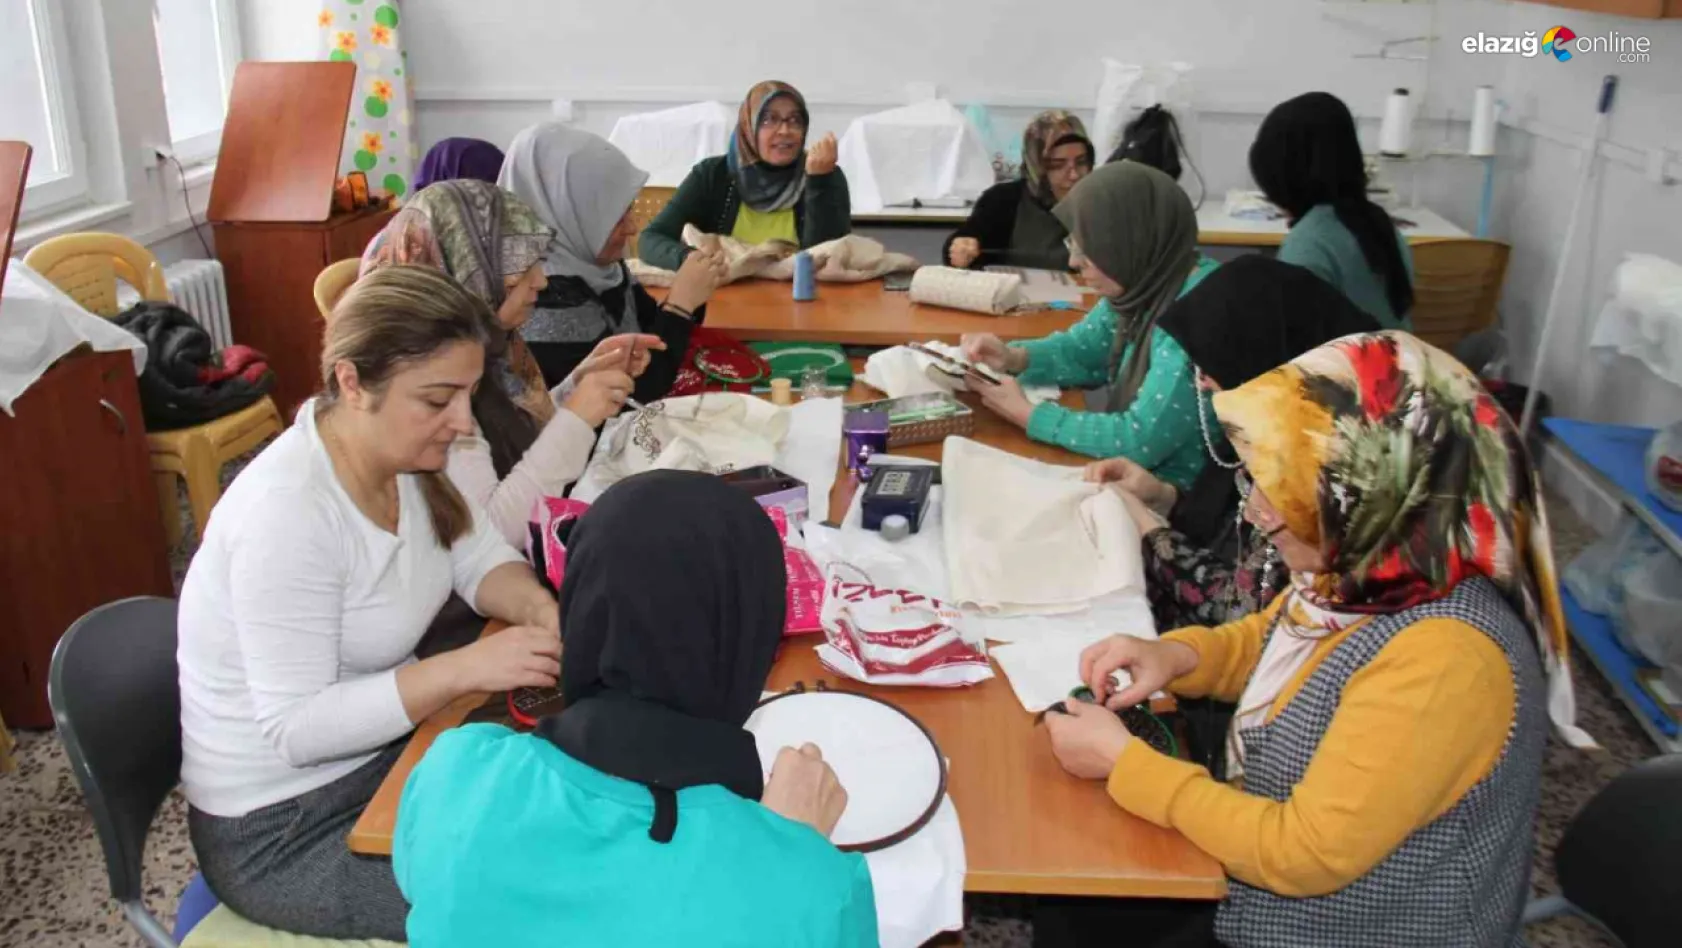 Elazığ'da kadınlar, Halk Eğitim Merkezi'ndeki kurslarda hem sosyalleşiyor hem de öğreniyor